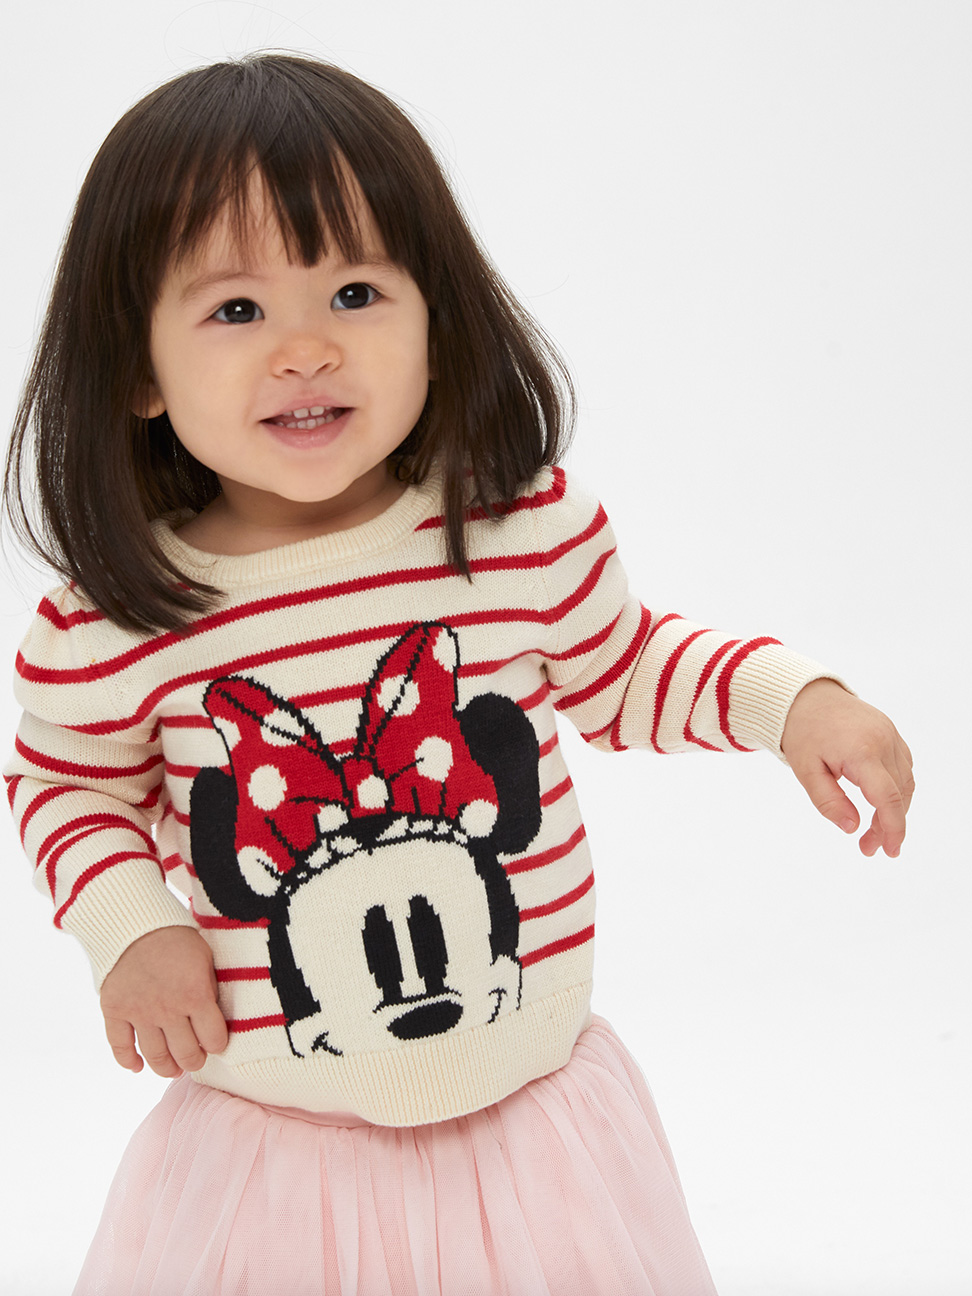 嬰兒裝|Gap x Disney迪士尼聯名 米妮童趣織紋舒適圓領毛衣-米白色